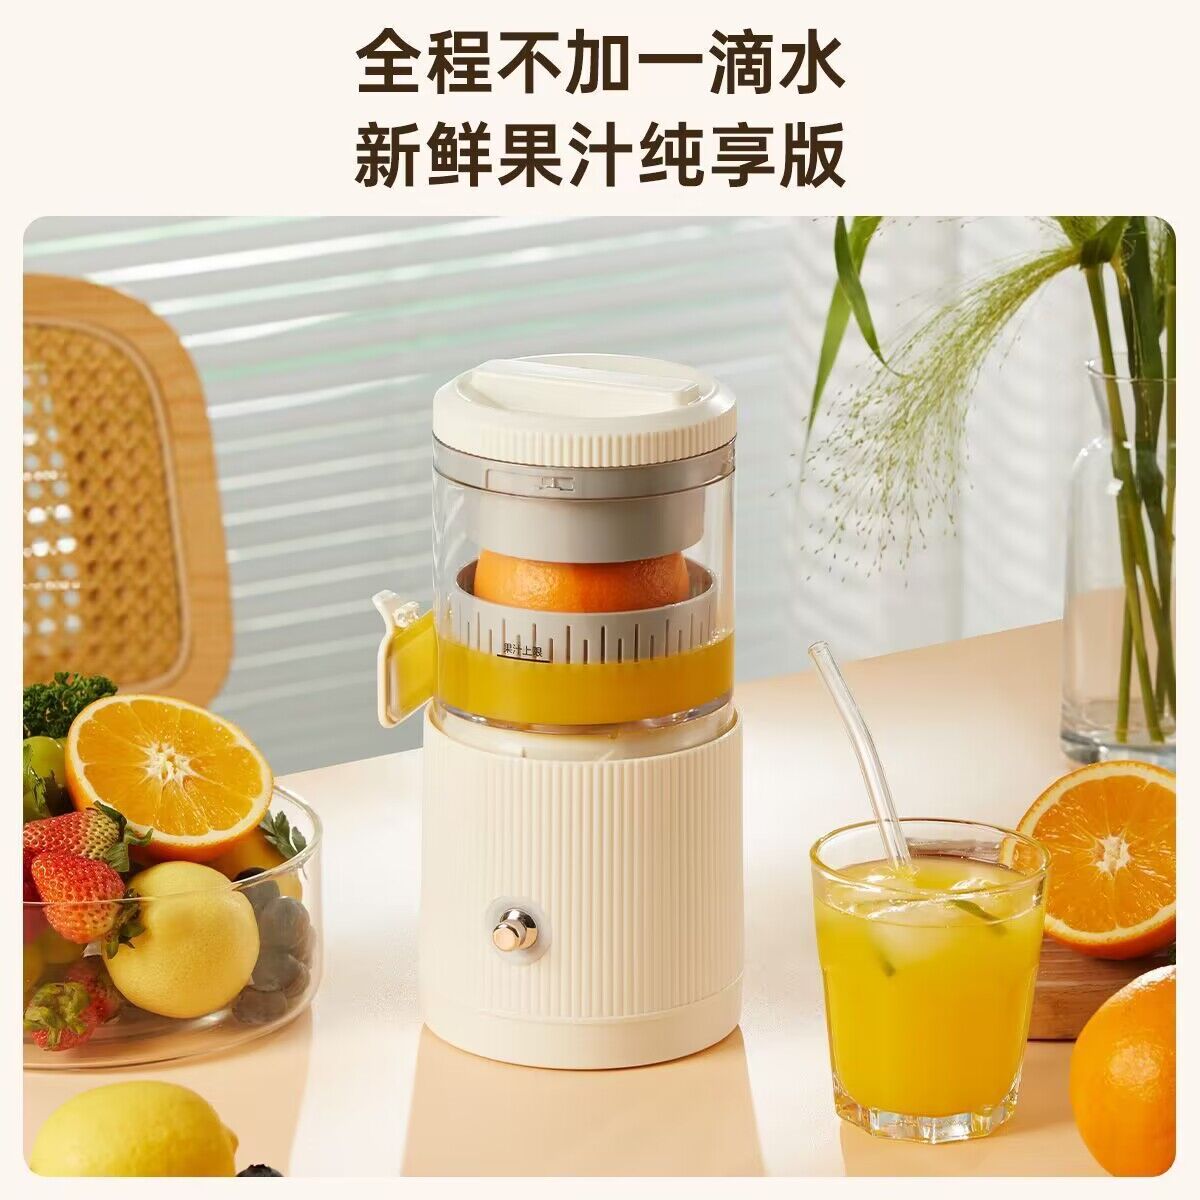 榨汁机家用小型便携式破壁水果电动榨汁杯果汁机迷你多功能炸果汁